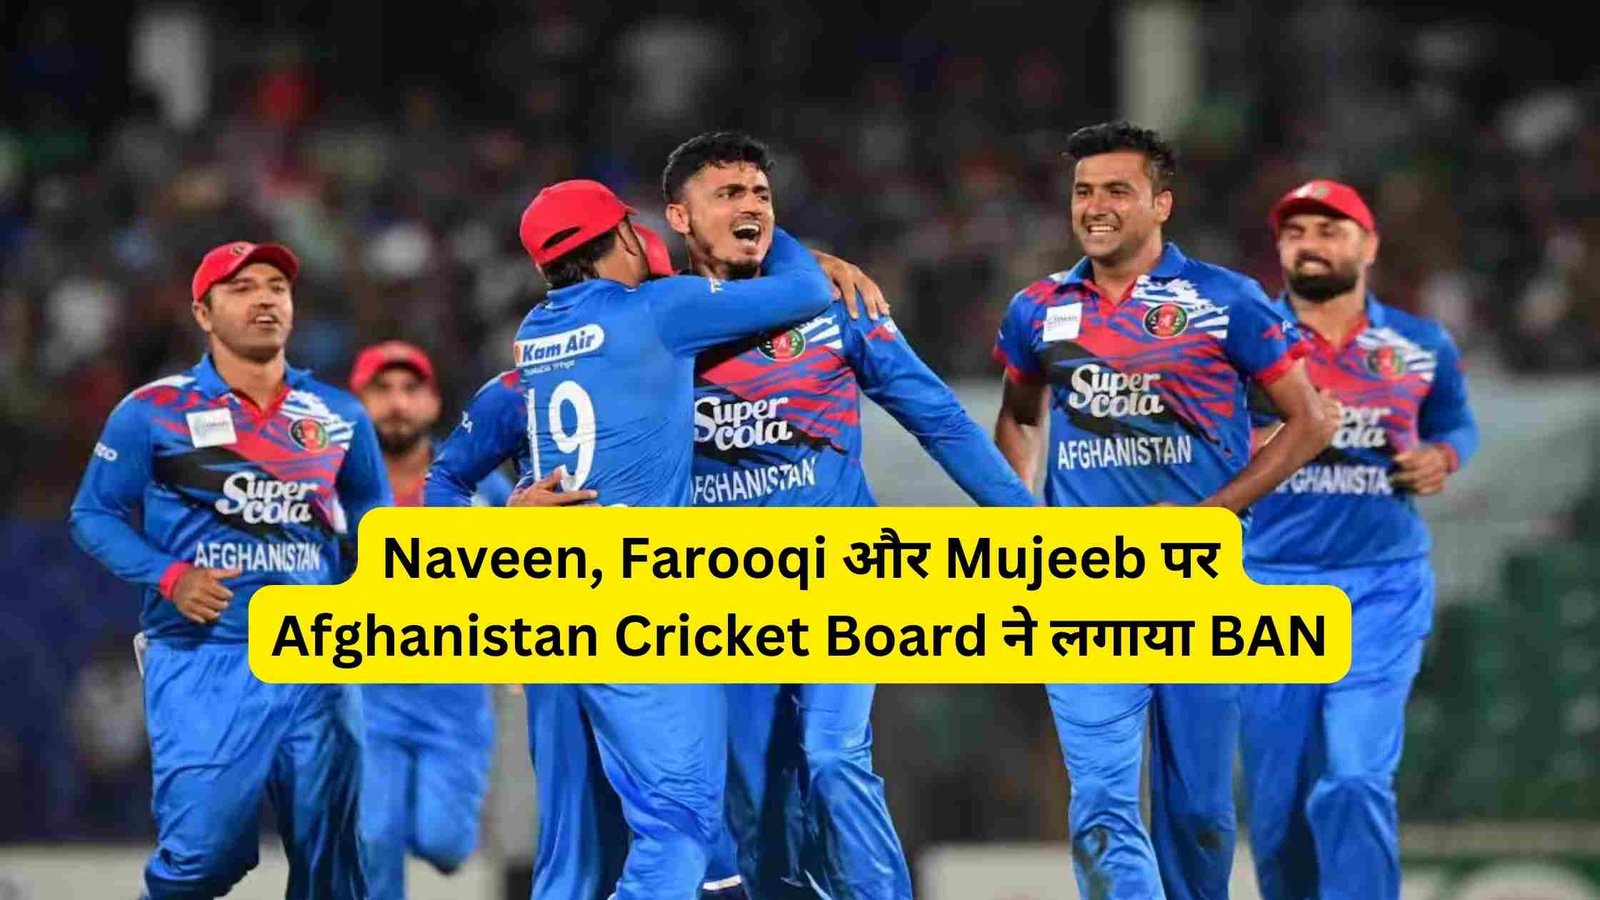 Naveen, Farooqi or Mujeeb par Afghanistan Cricket Board ne lagaya BAN